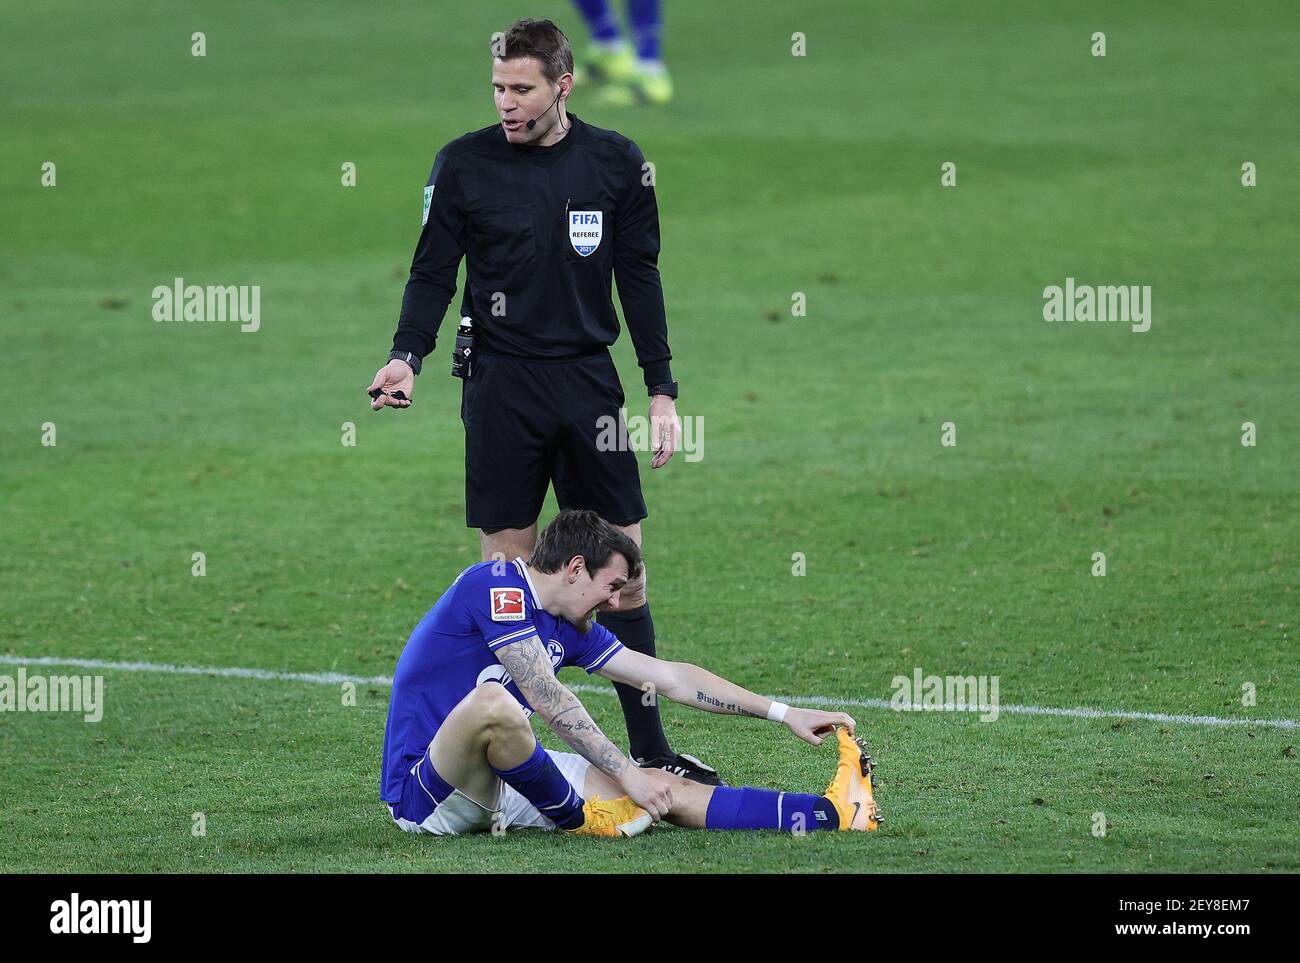 Referee injured fotografías e imágenes de alta resolución - Página 10 -  Alamy